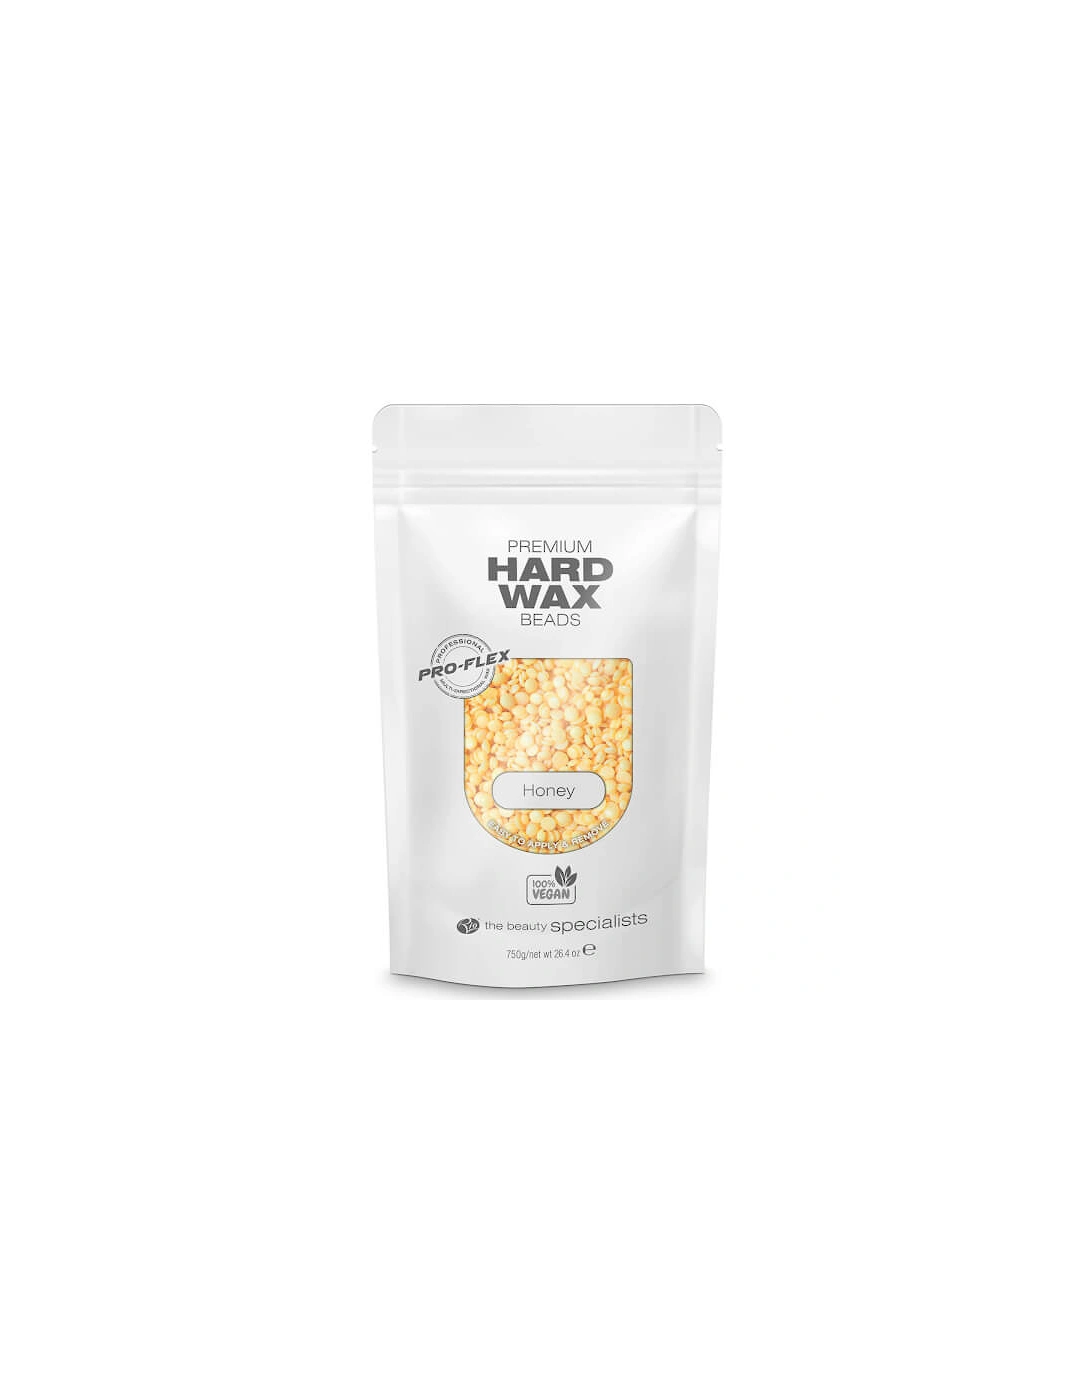 Premium Hard Wax Beads - Honey, 2 of 1